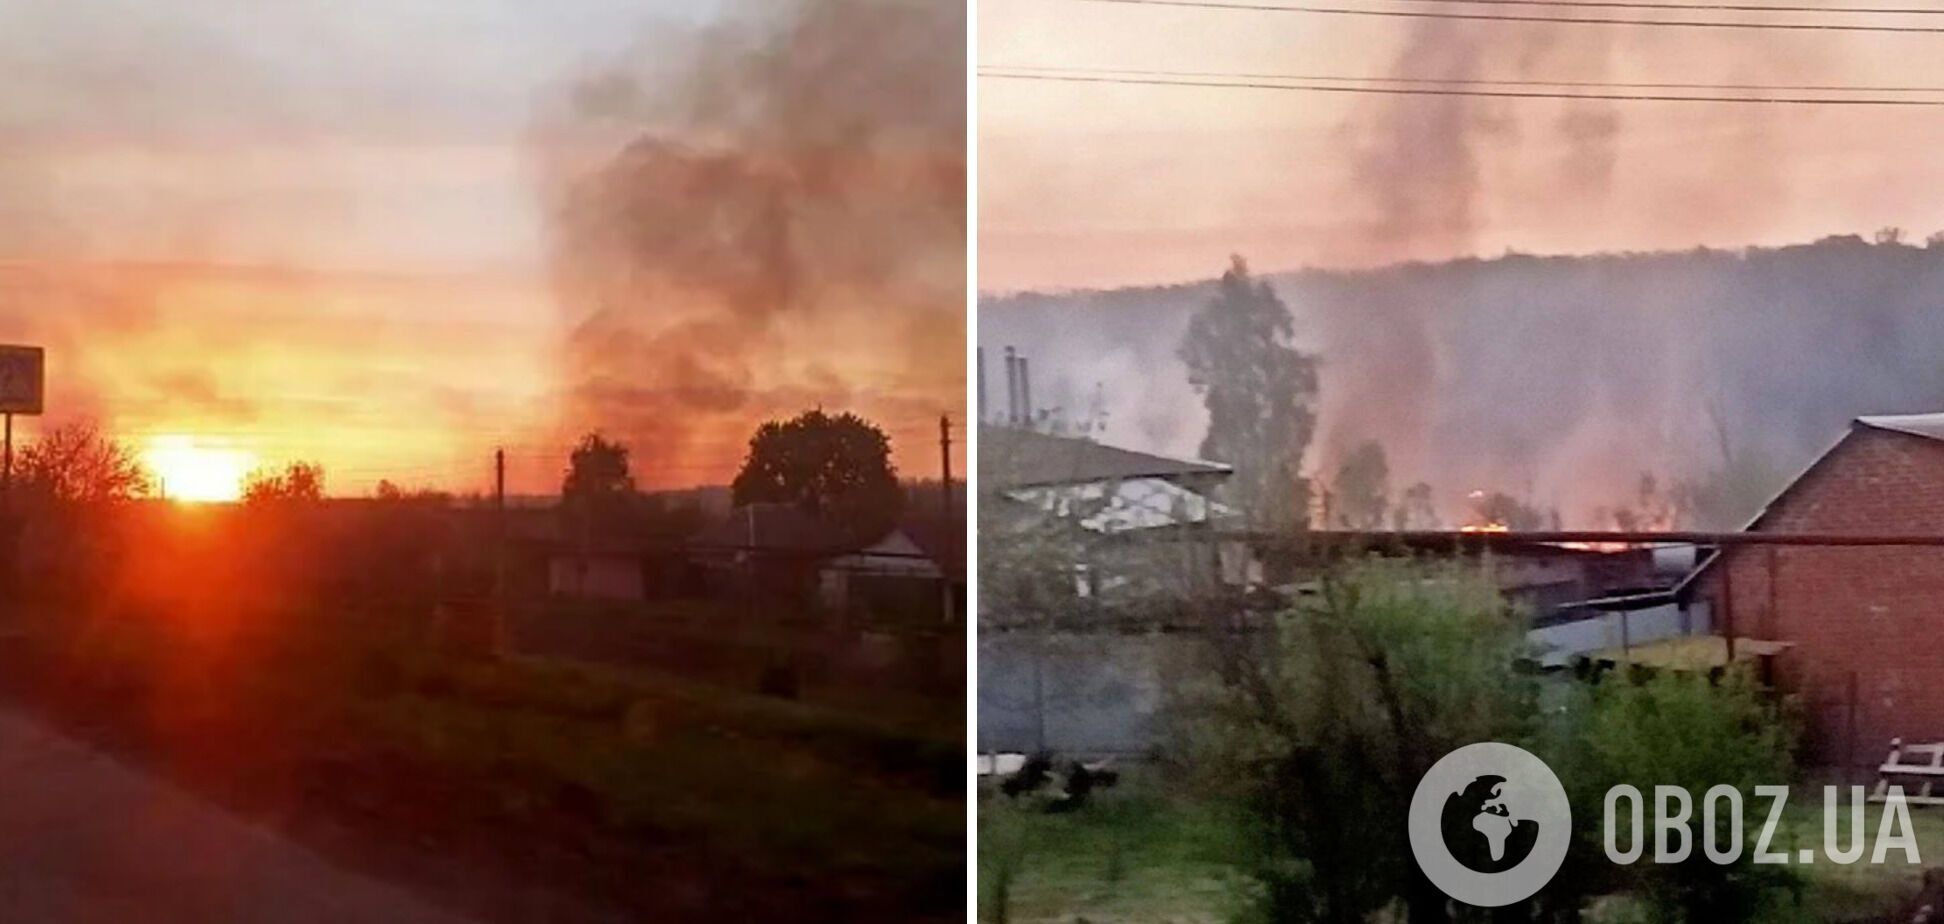 Місцеві мешканці почали публікувати фото, на яких видно дим над селом